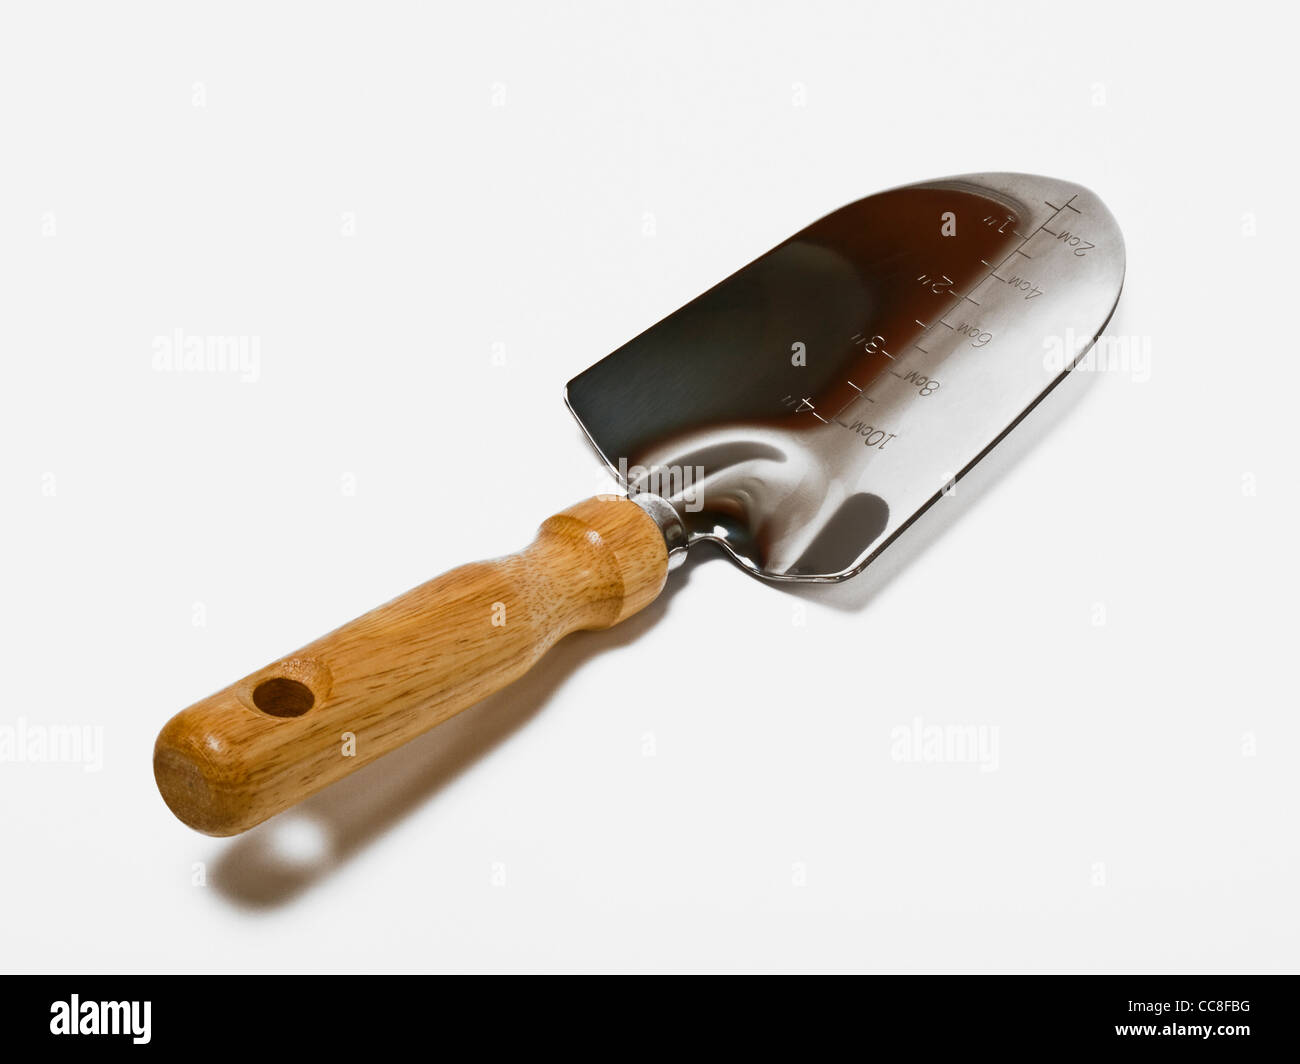 Detailansicht eines Handspatens | Detail photo of a hand spade Stock Photo